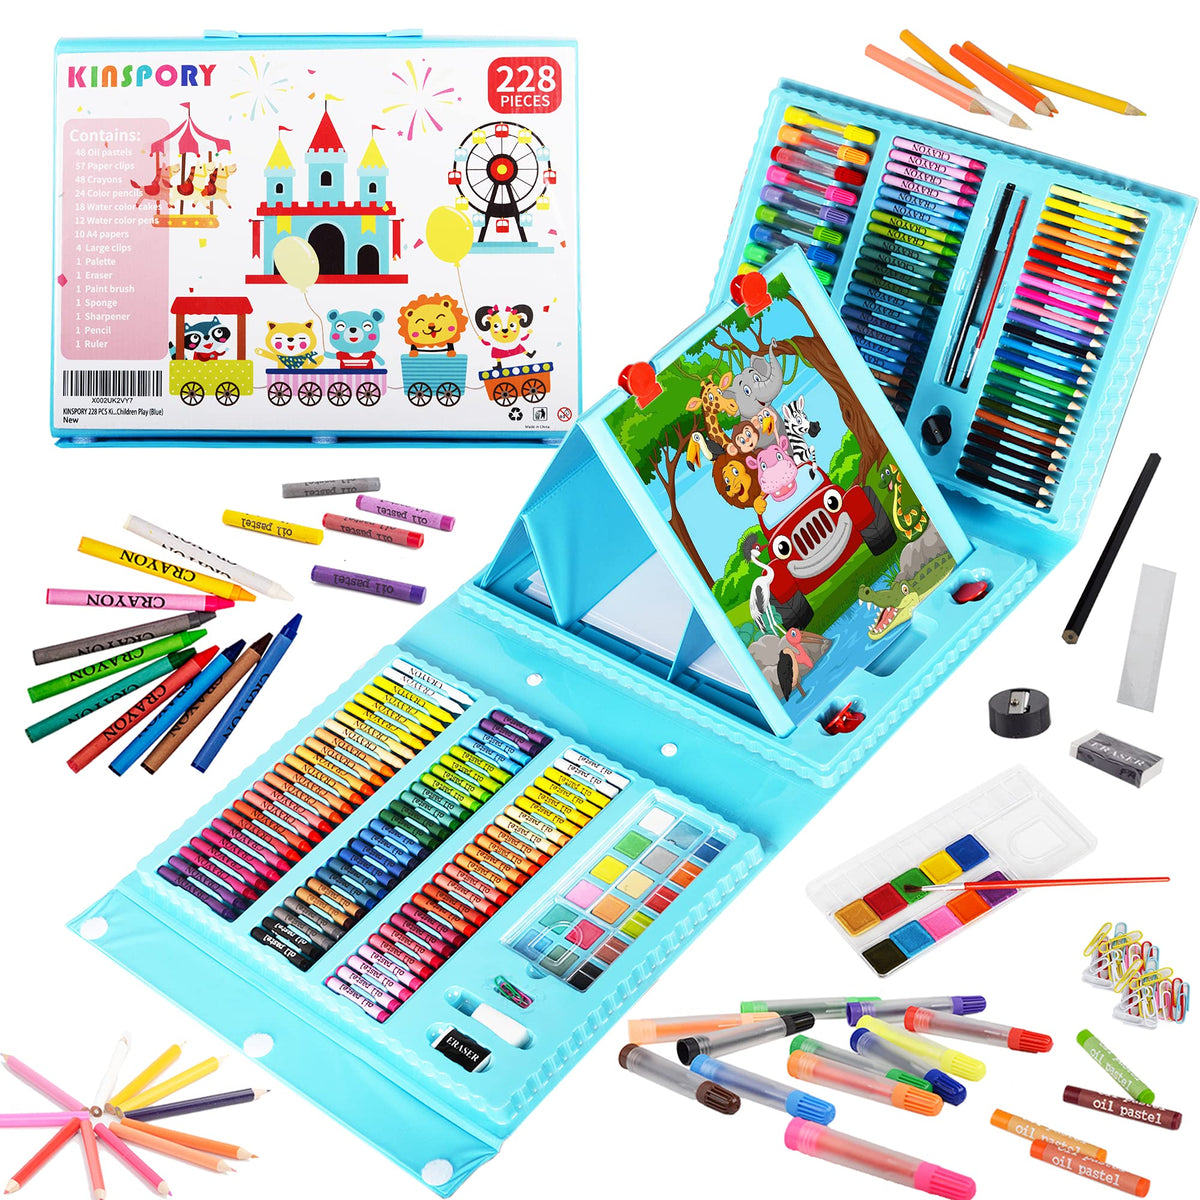  POPYOLA Watercolor Pencils, 72 Colored Pencils for